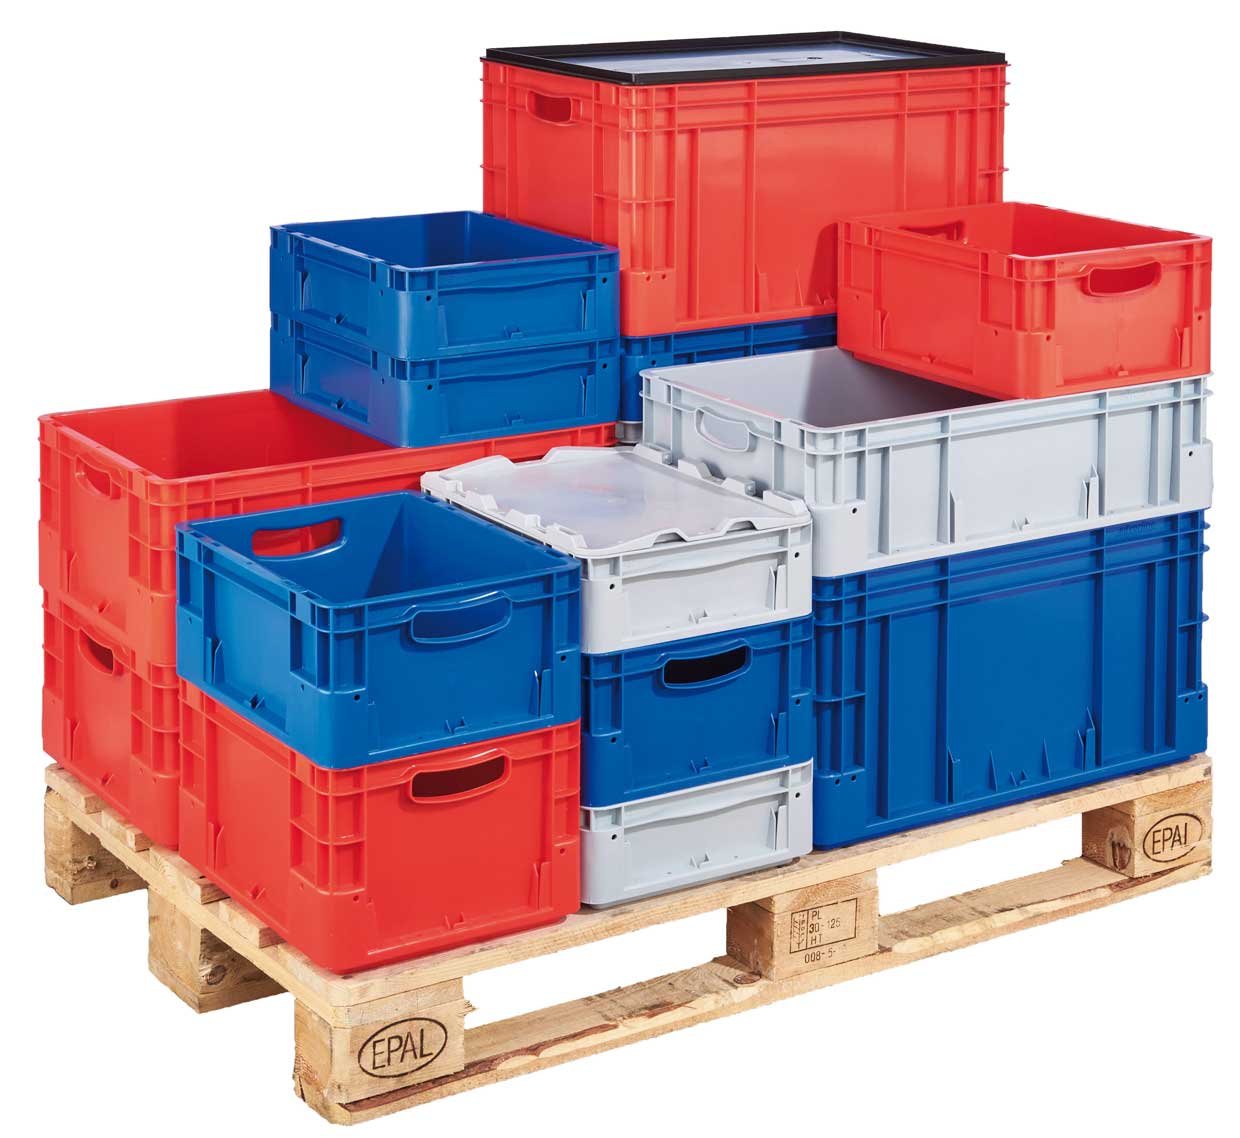 Robuste Kunststoffboxen in verschiedenen Größen und Farben, die maßlich passend auf einer Europalette stehen.